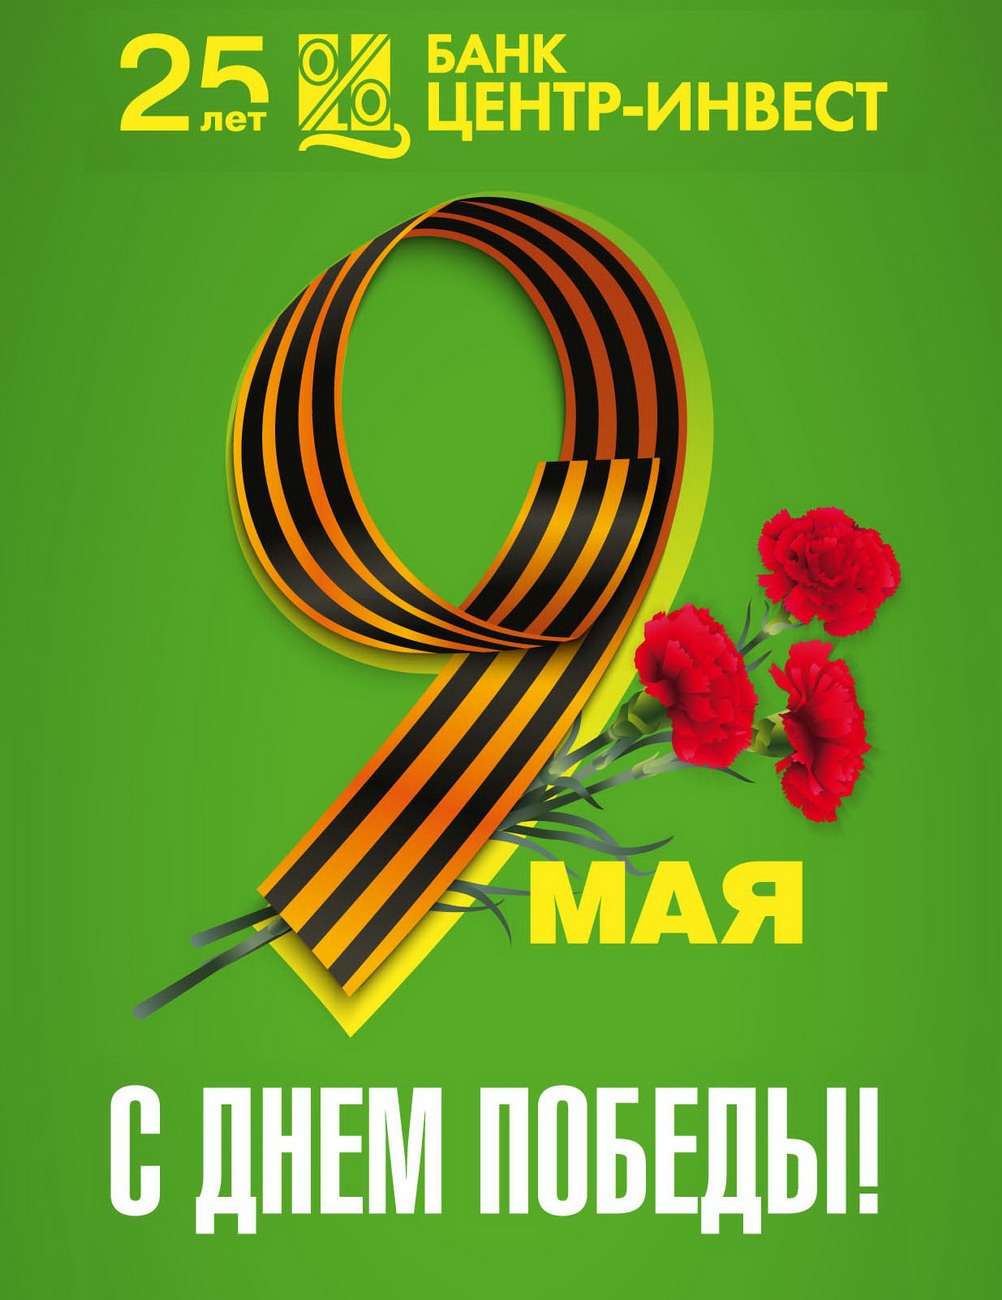 5 мая «Центр-инвест» подарит музыкальный подарок жителям Ростова-на-Дону